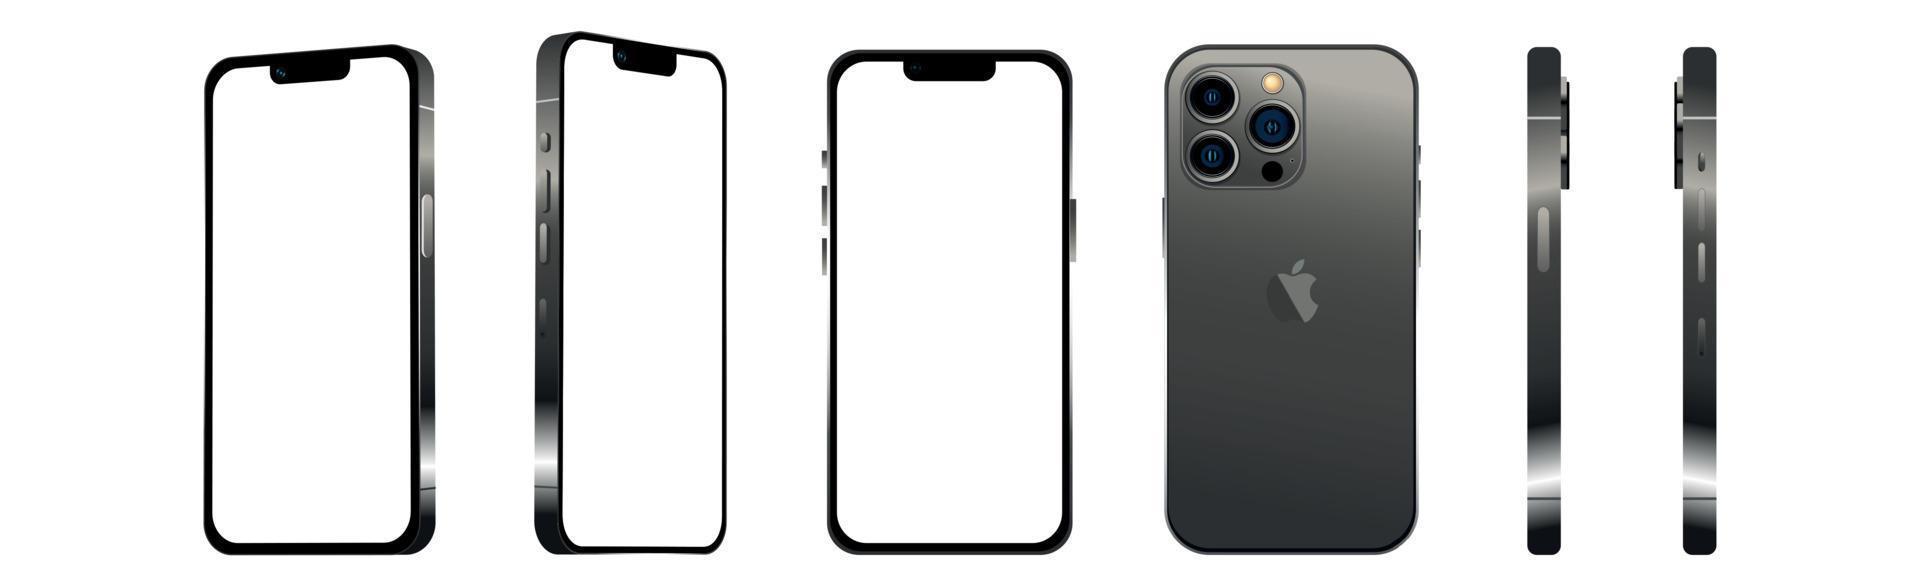 Smartphone moderne noir mobile iphone 13 pro sous 6 angles différents sur fond blanc - vector